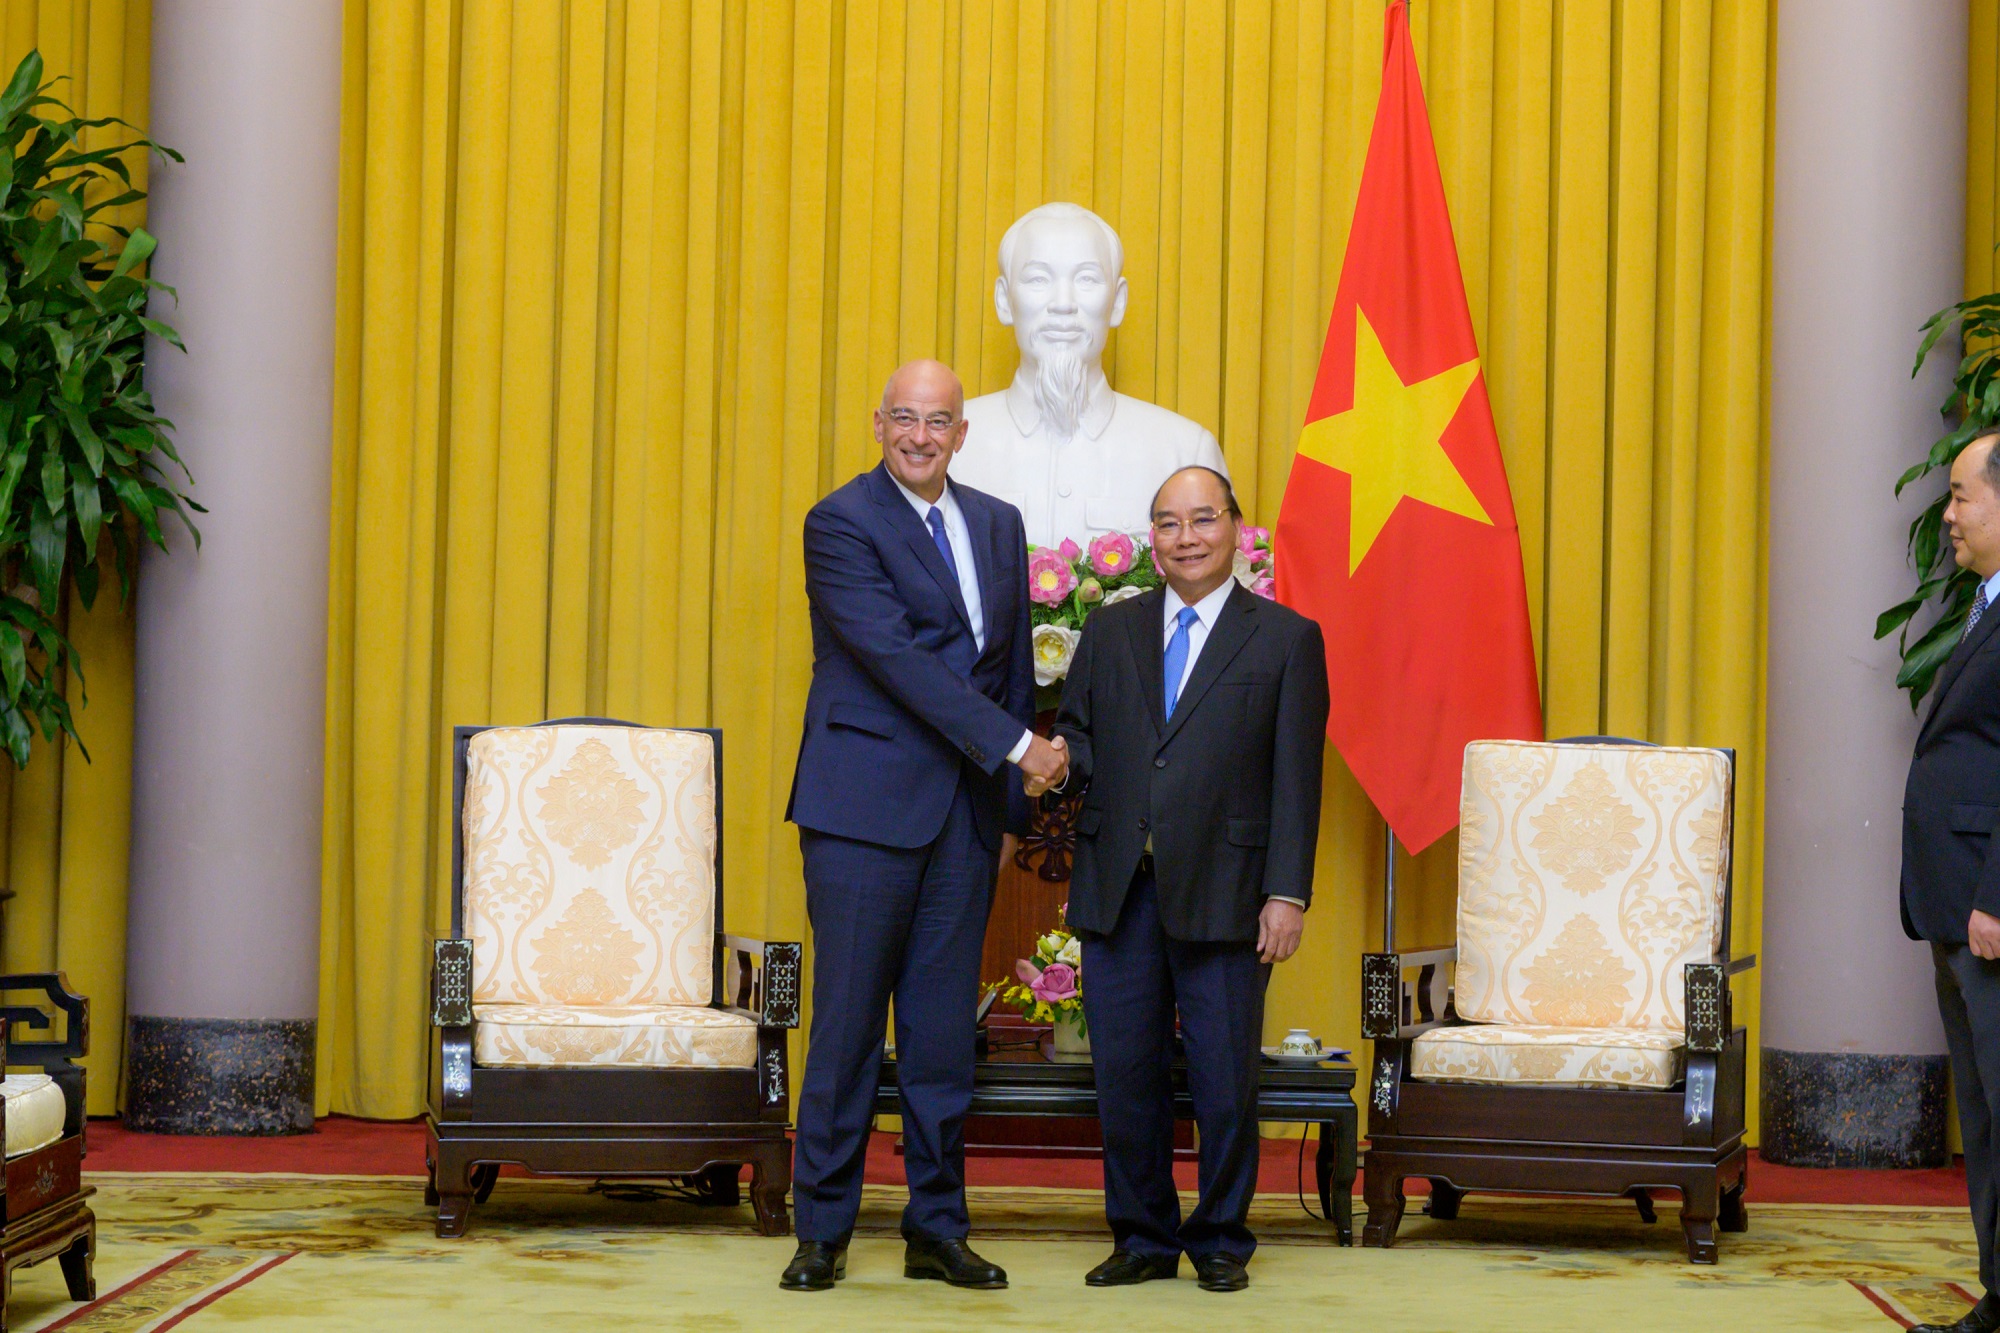 ΥΠΕΞ: Γόνιμη συζήτηση Ν. Δένδια με τον Πρόεδρο του Βιετνάμ για σύσφιξη διμερών σχέσεων σε όλους τους τομείς